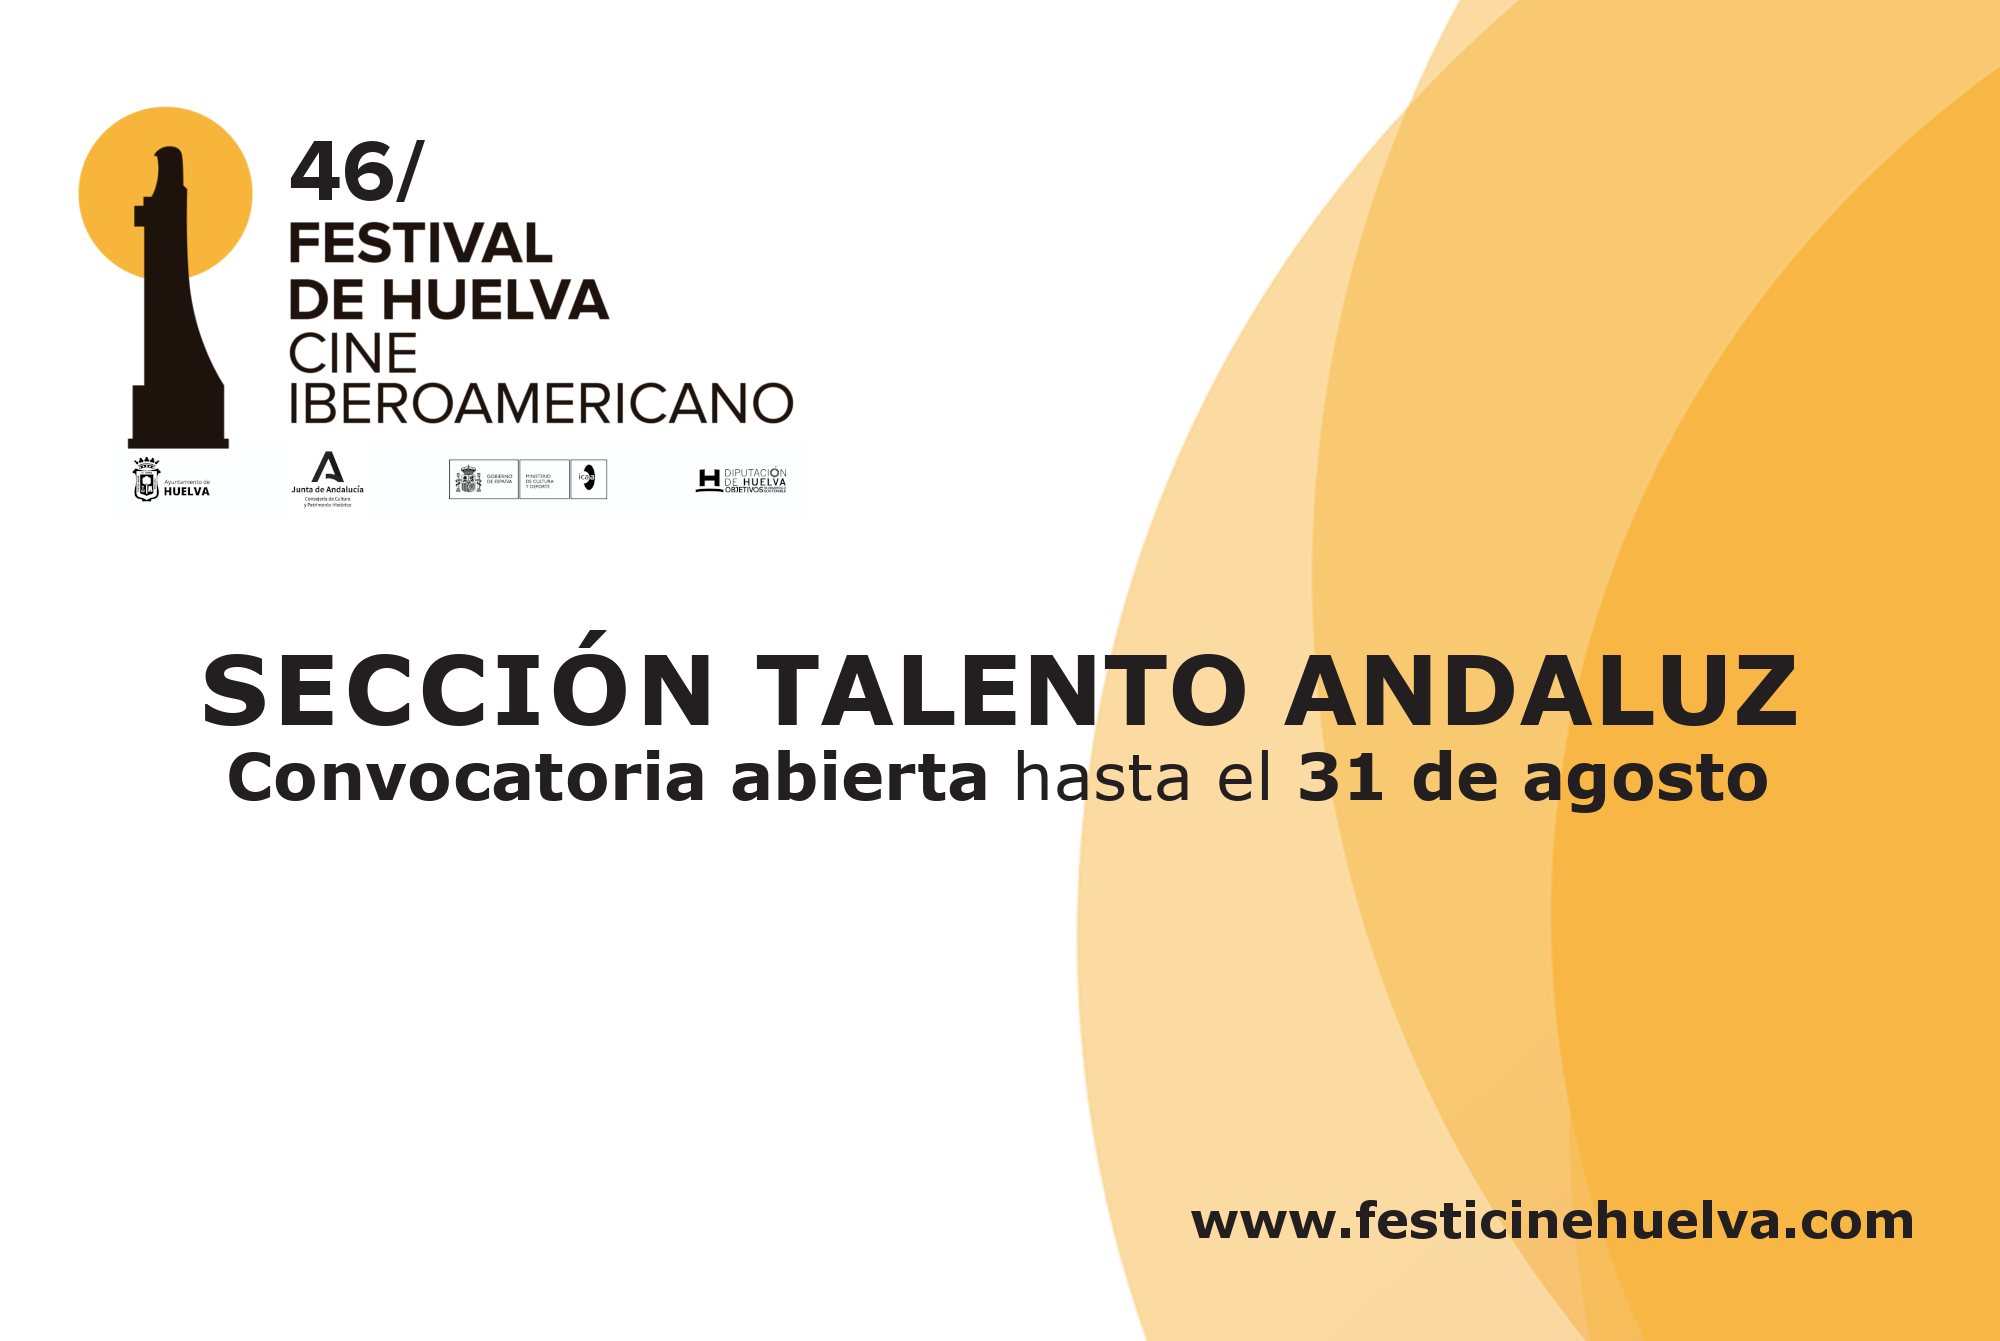 El Festival de Huelva abre la convocatoria para la sección Talento Andaluz